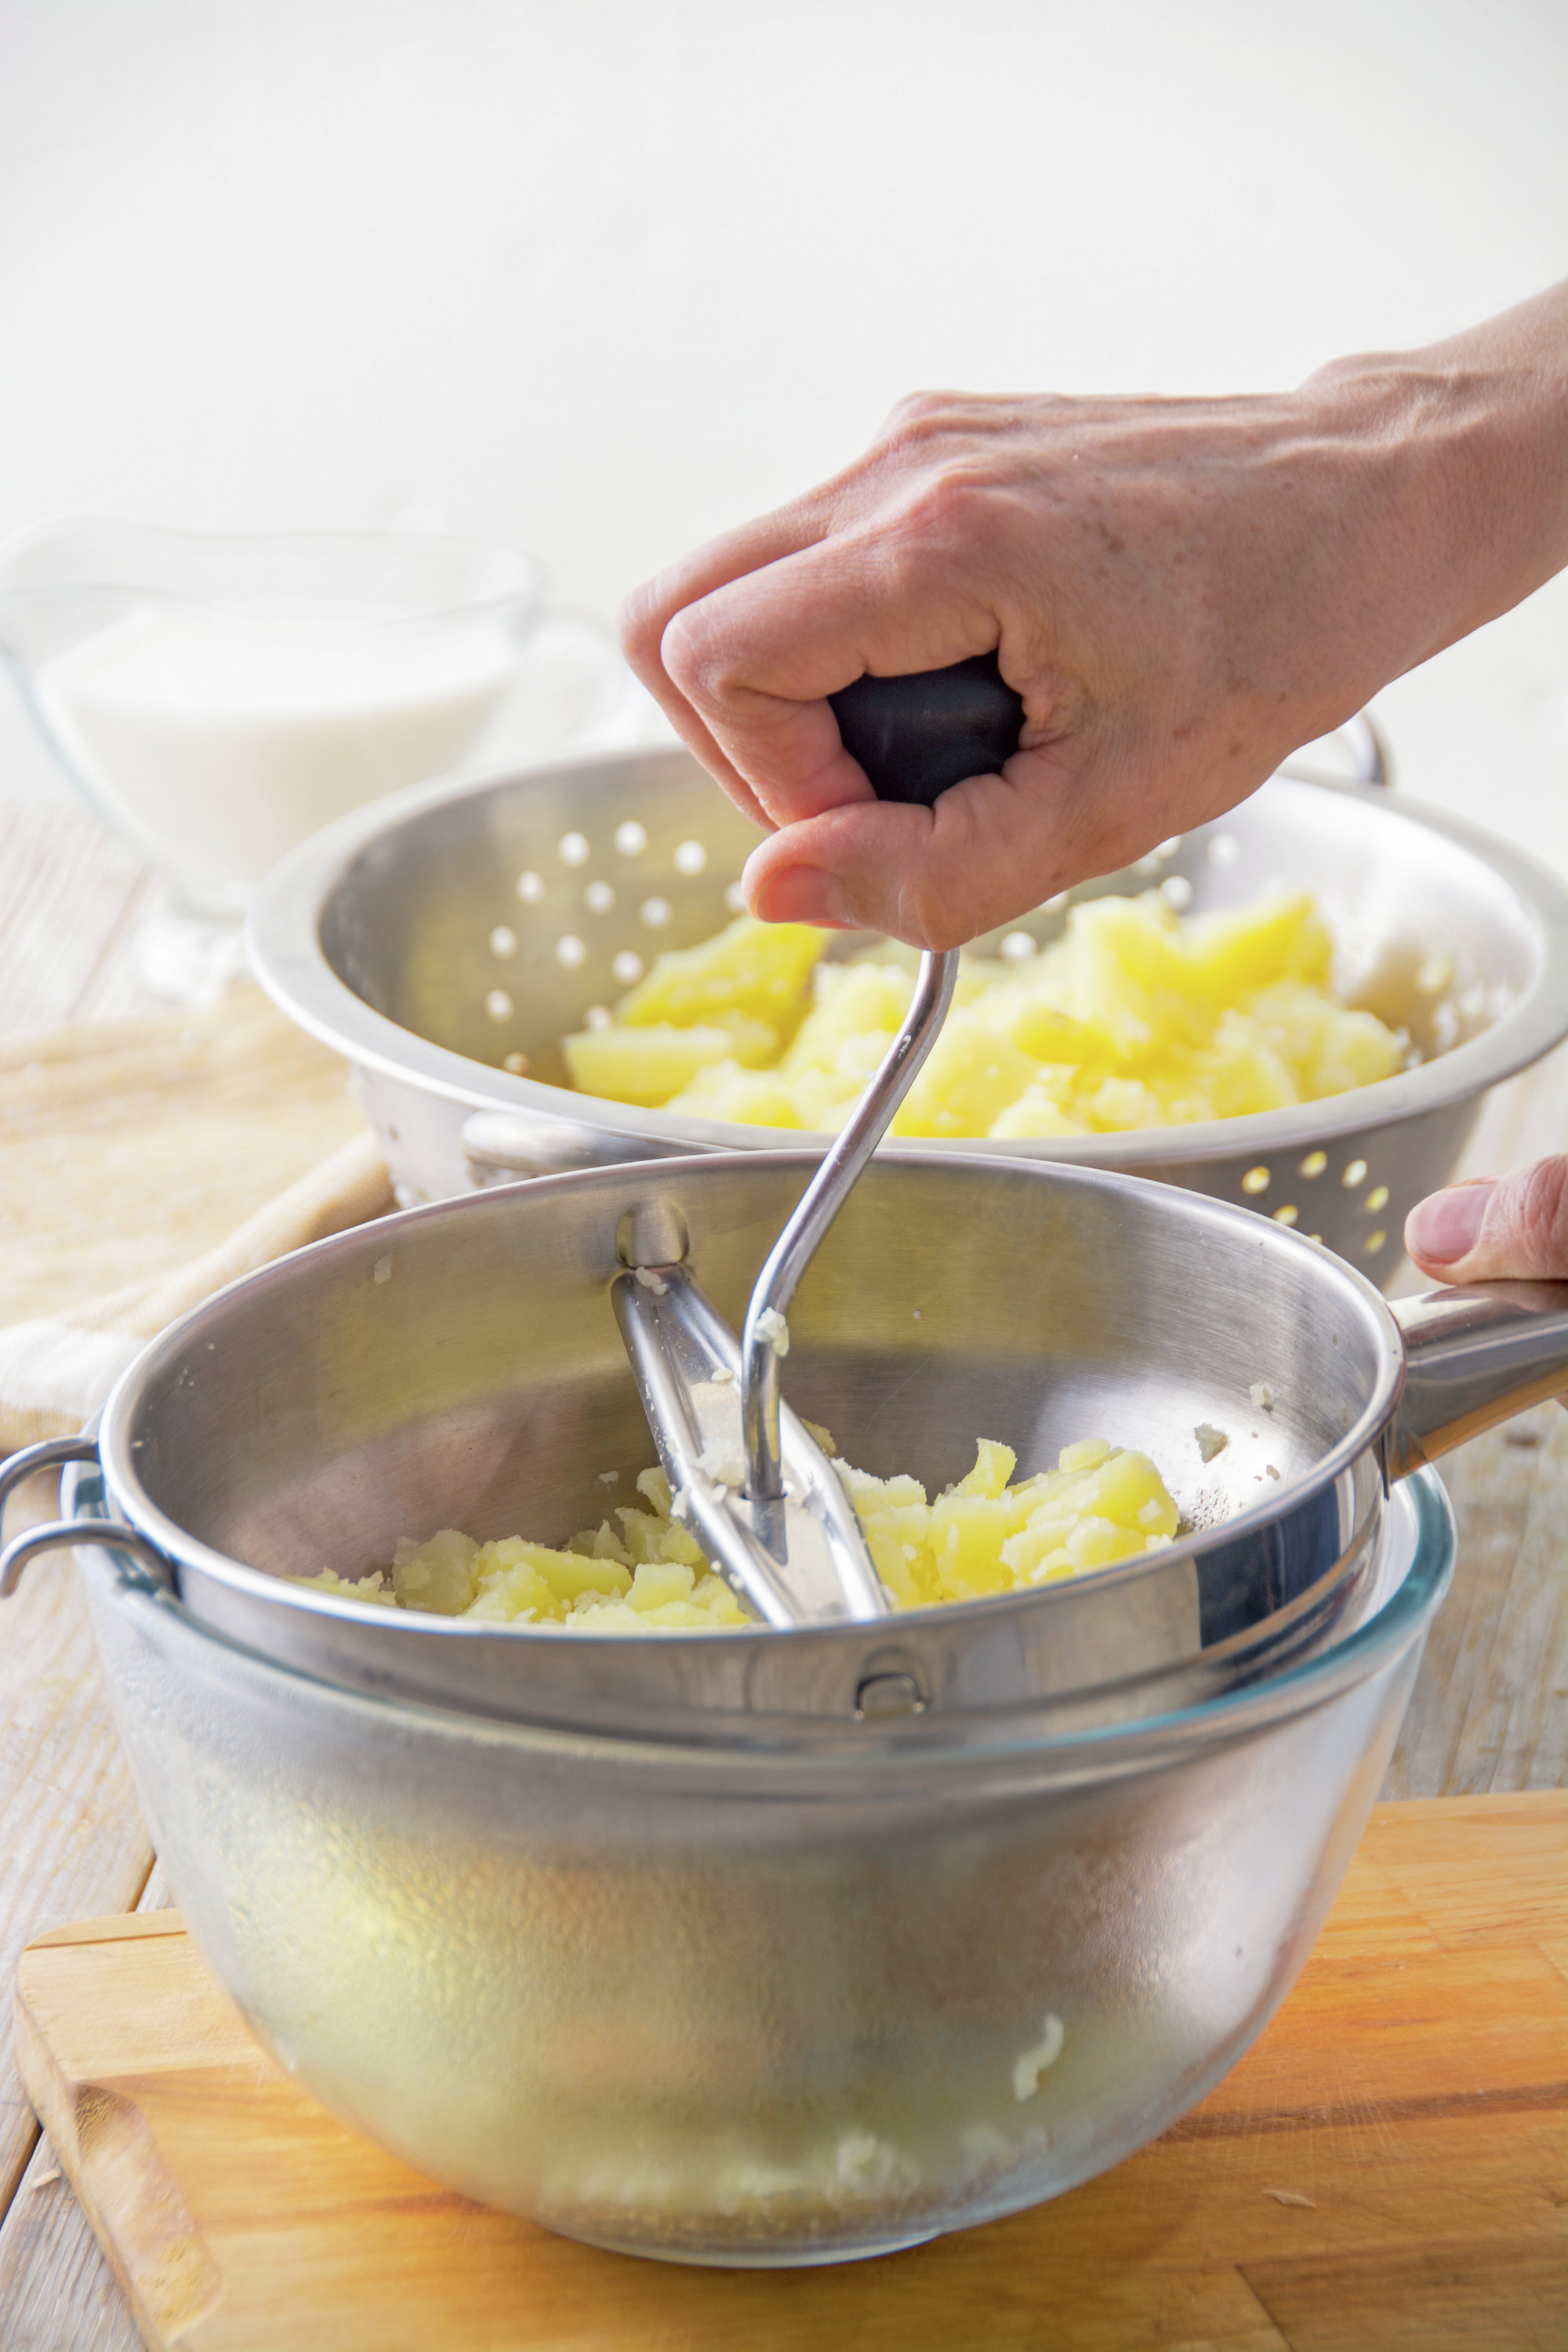 1. Prepara el puré de patatas